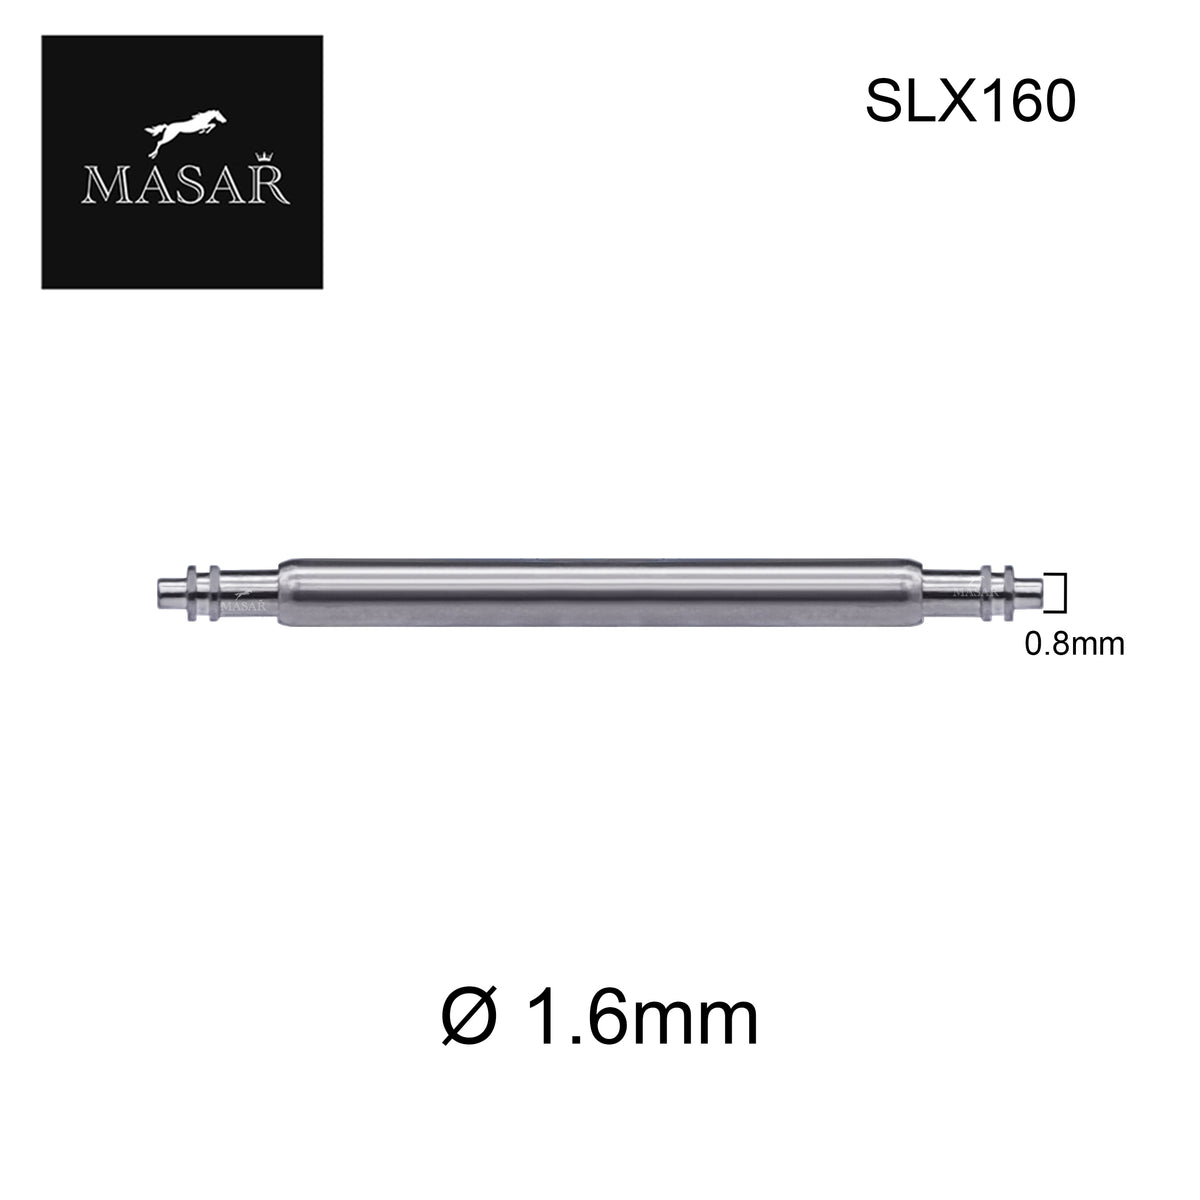 6mm à 22mm SLX160 | Ø 1.6mm - Double Flange (Bride) - Inox - 2 pcs